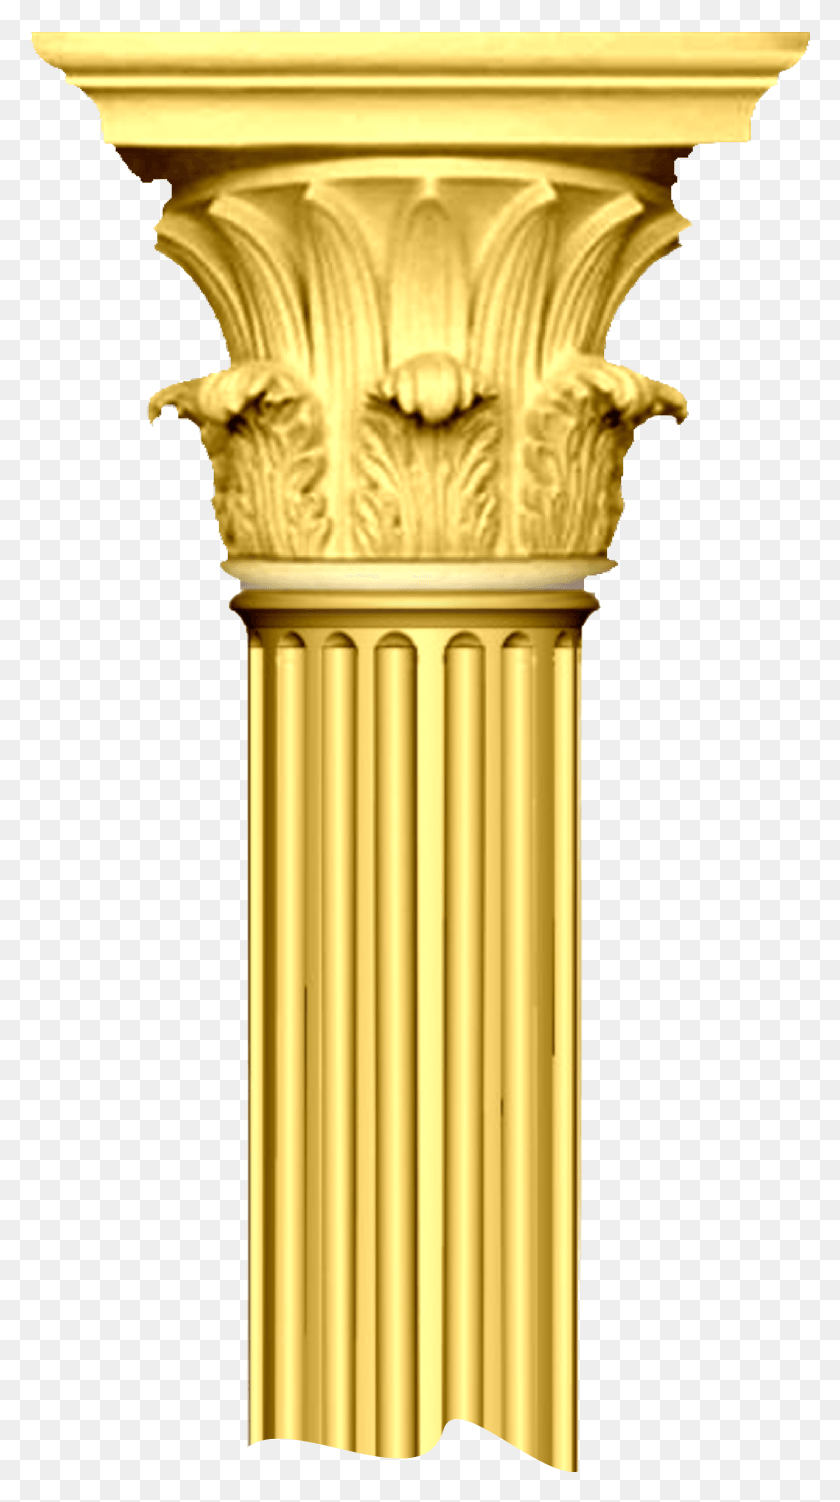 1557x2879 Золотая Колонна Шапито Pidestal Grce Антикварные Изображения, Архитектура, Здание, Колонна Hd Png Скачать